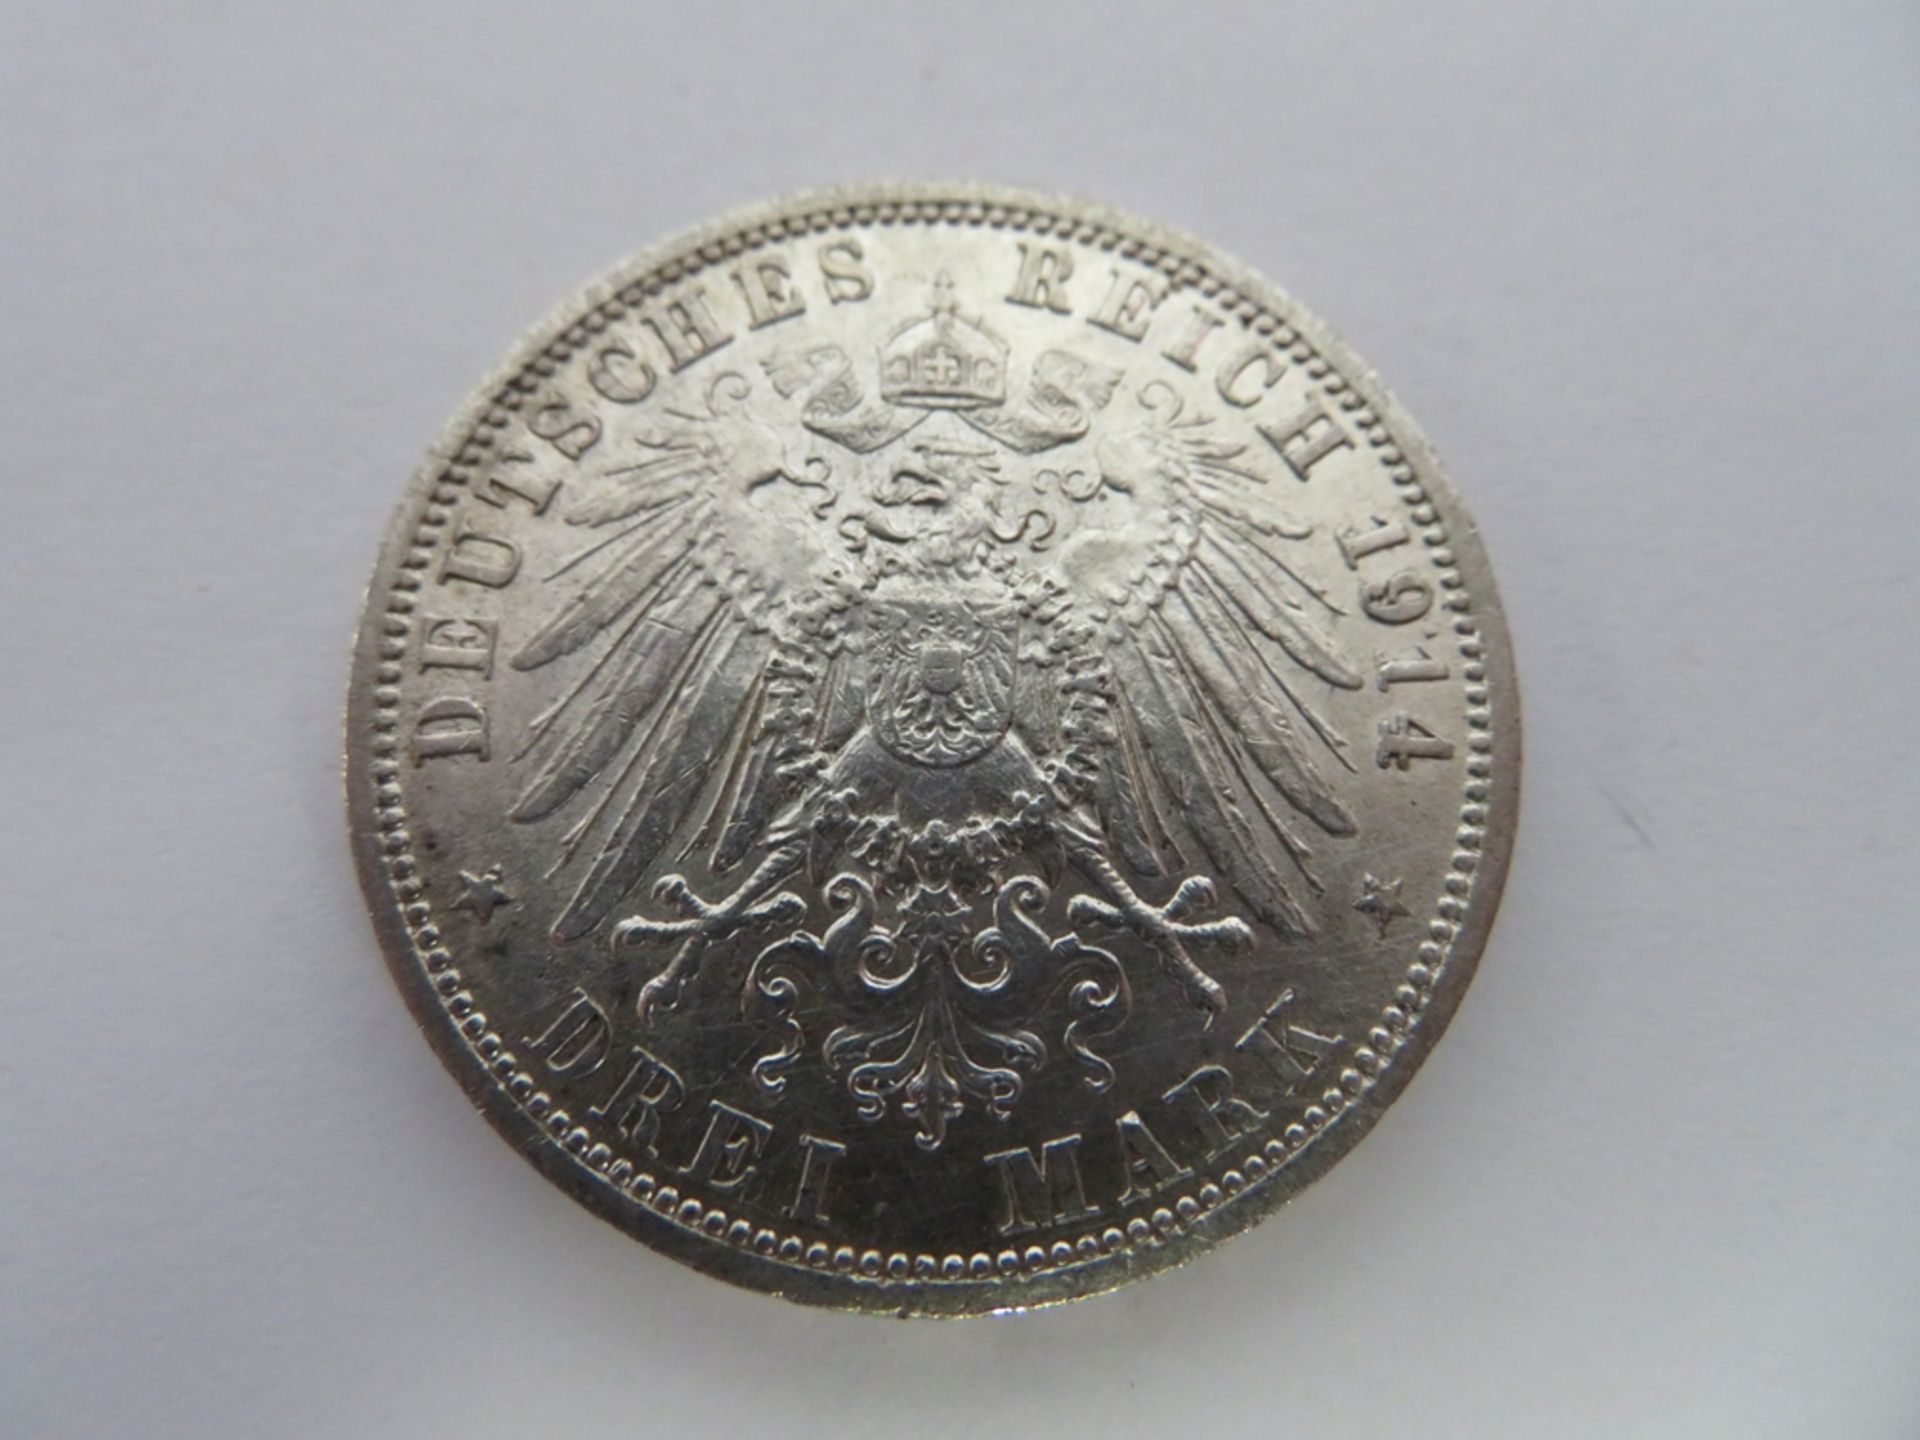 Silbermünze, 3 Mark, 1914 A, Wilhelm II. von Preußen, 25 jähriges Regierungsjubiläum, d 3,4 cm. - Image 2 of 2